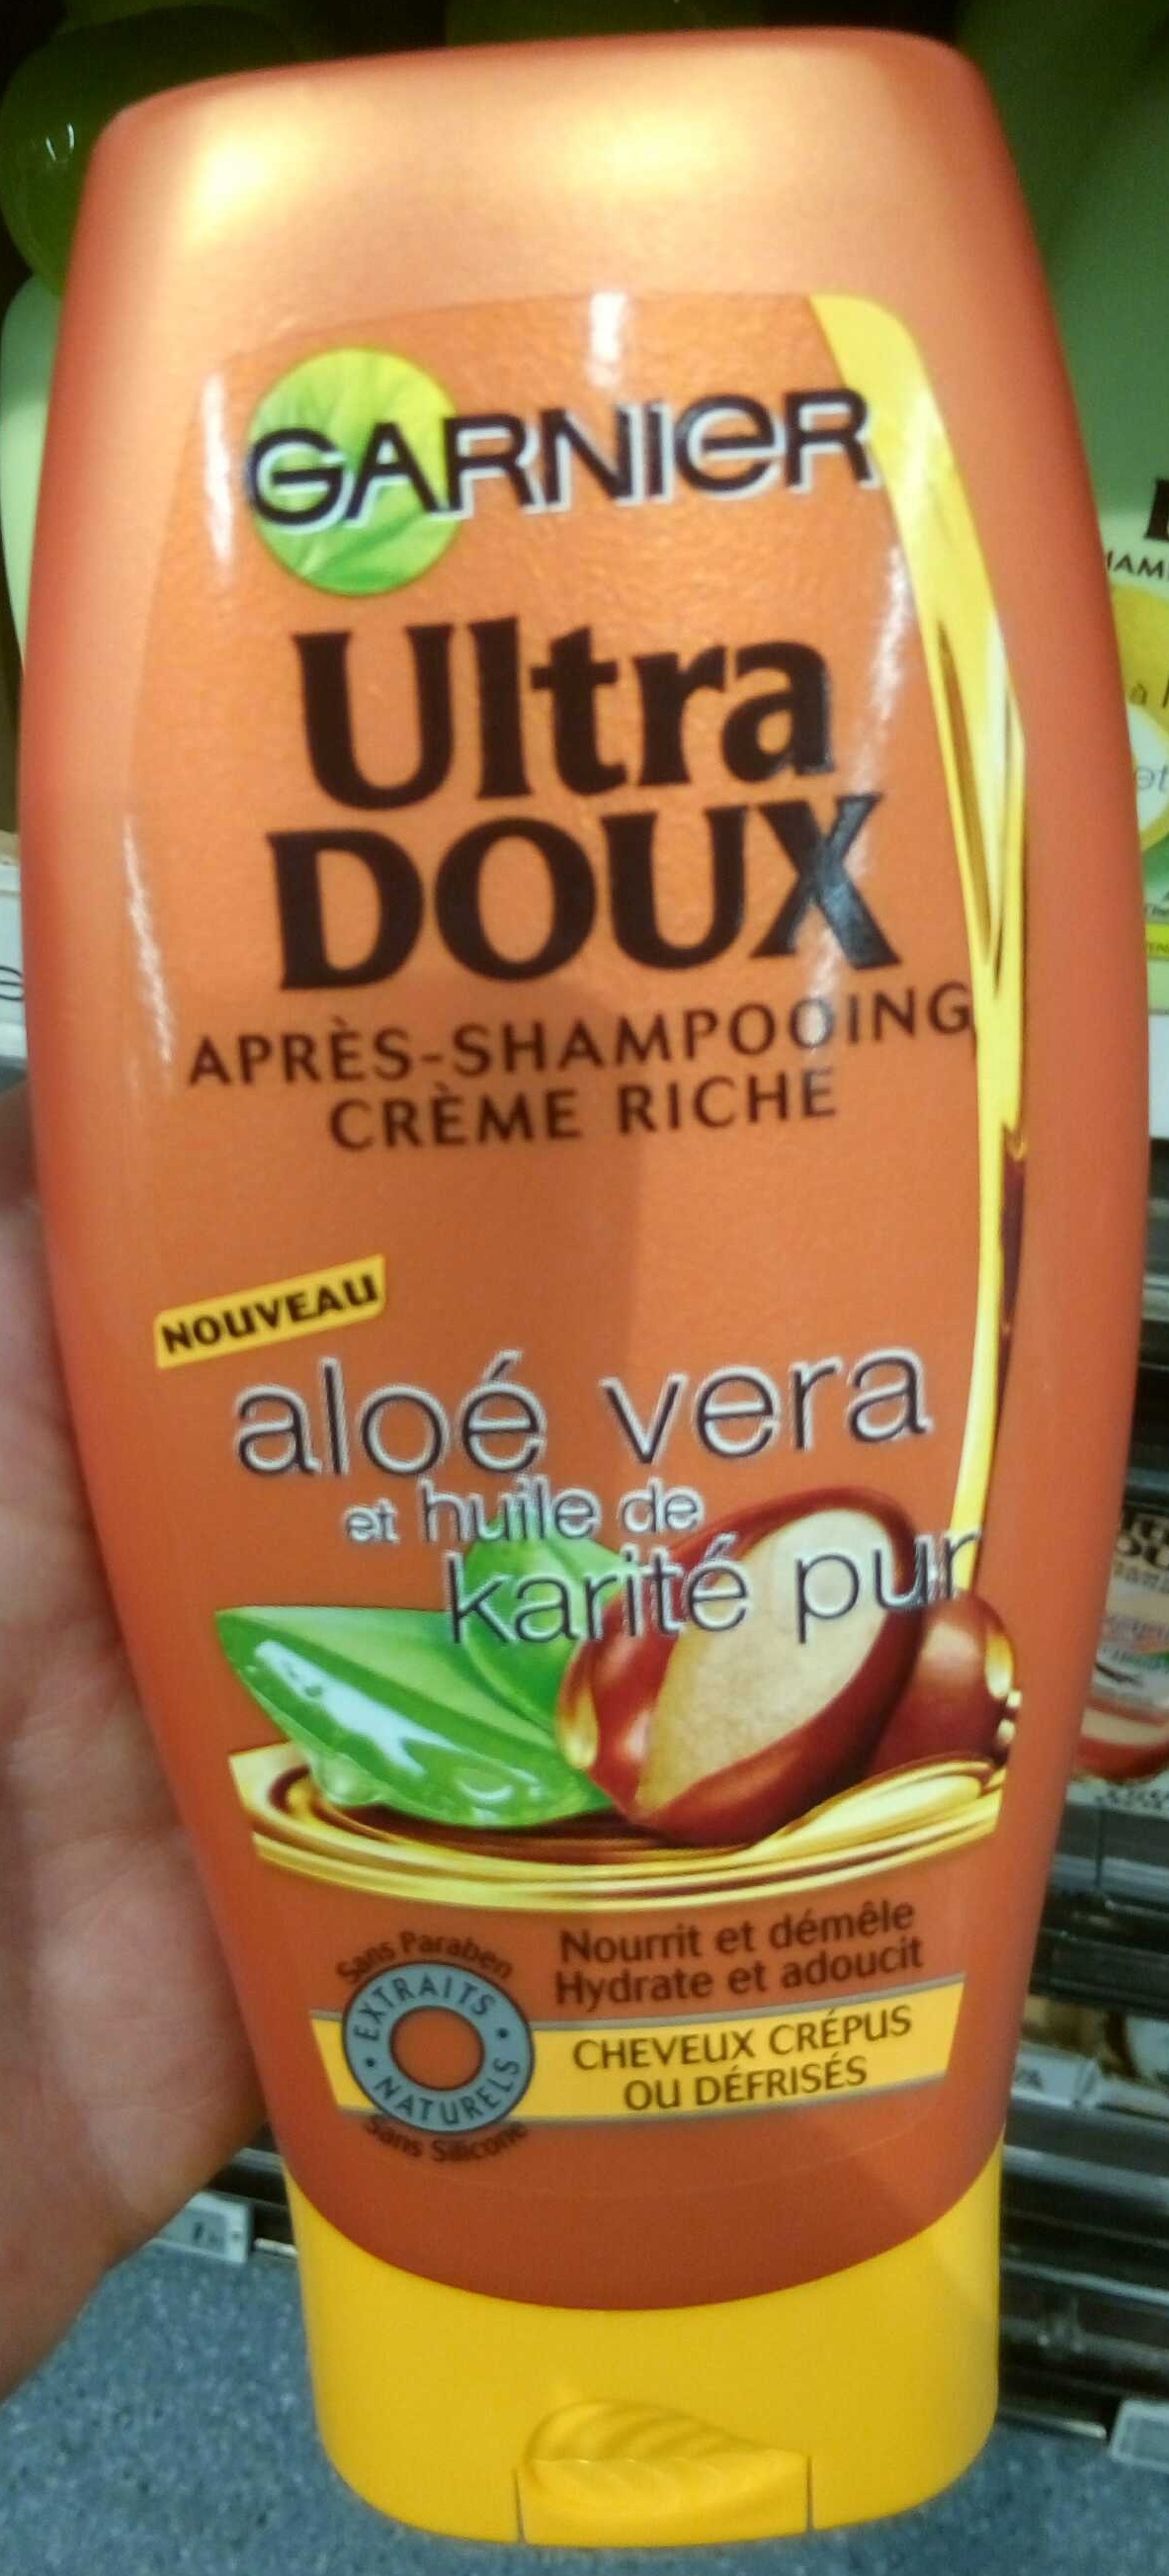 Ultra Doux Après-shampooing crème riche Aloé vera et huile de karité pur - Produkto - fr